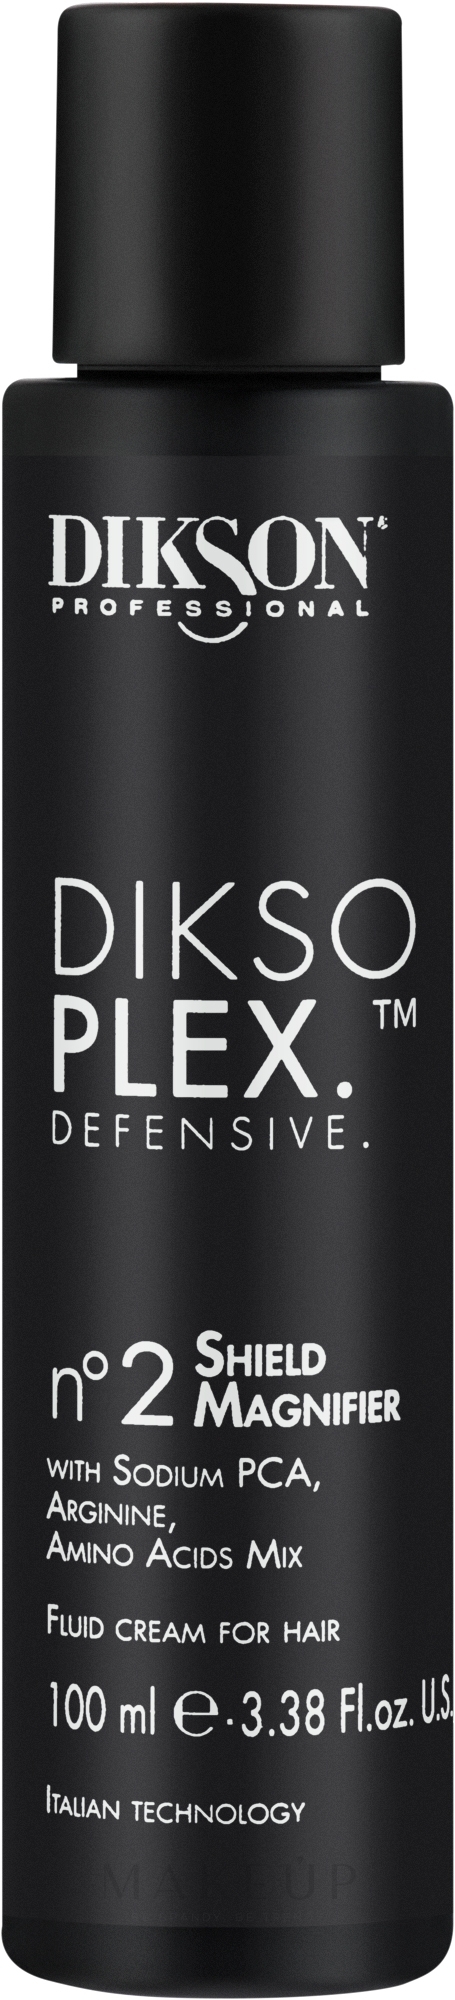 Feuchtigkeitsspendende und nährende Flüssigcreme für das Haar - Dikson Dikso Plex Defensive N.2 Shield Magnifier — Bild 100 ml